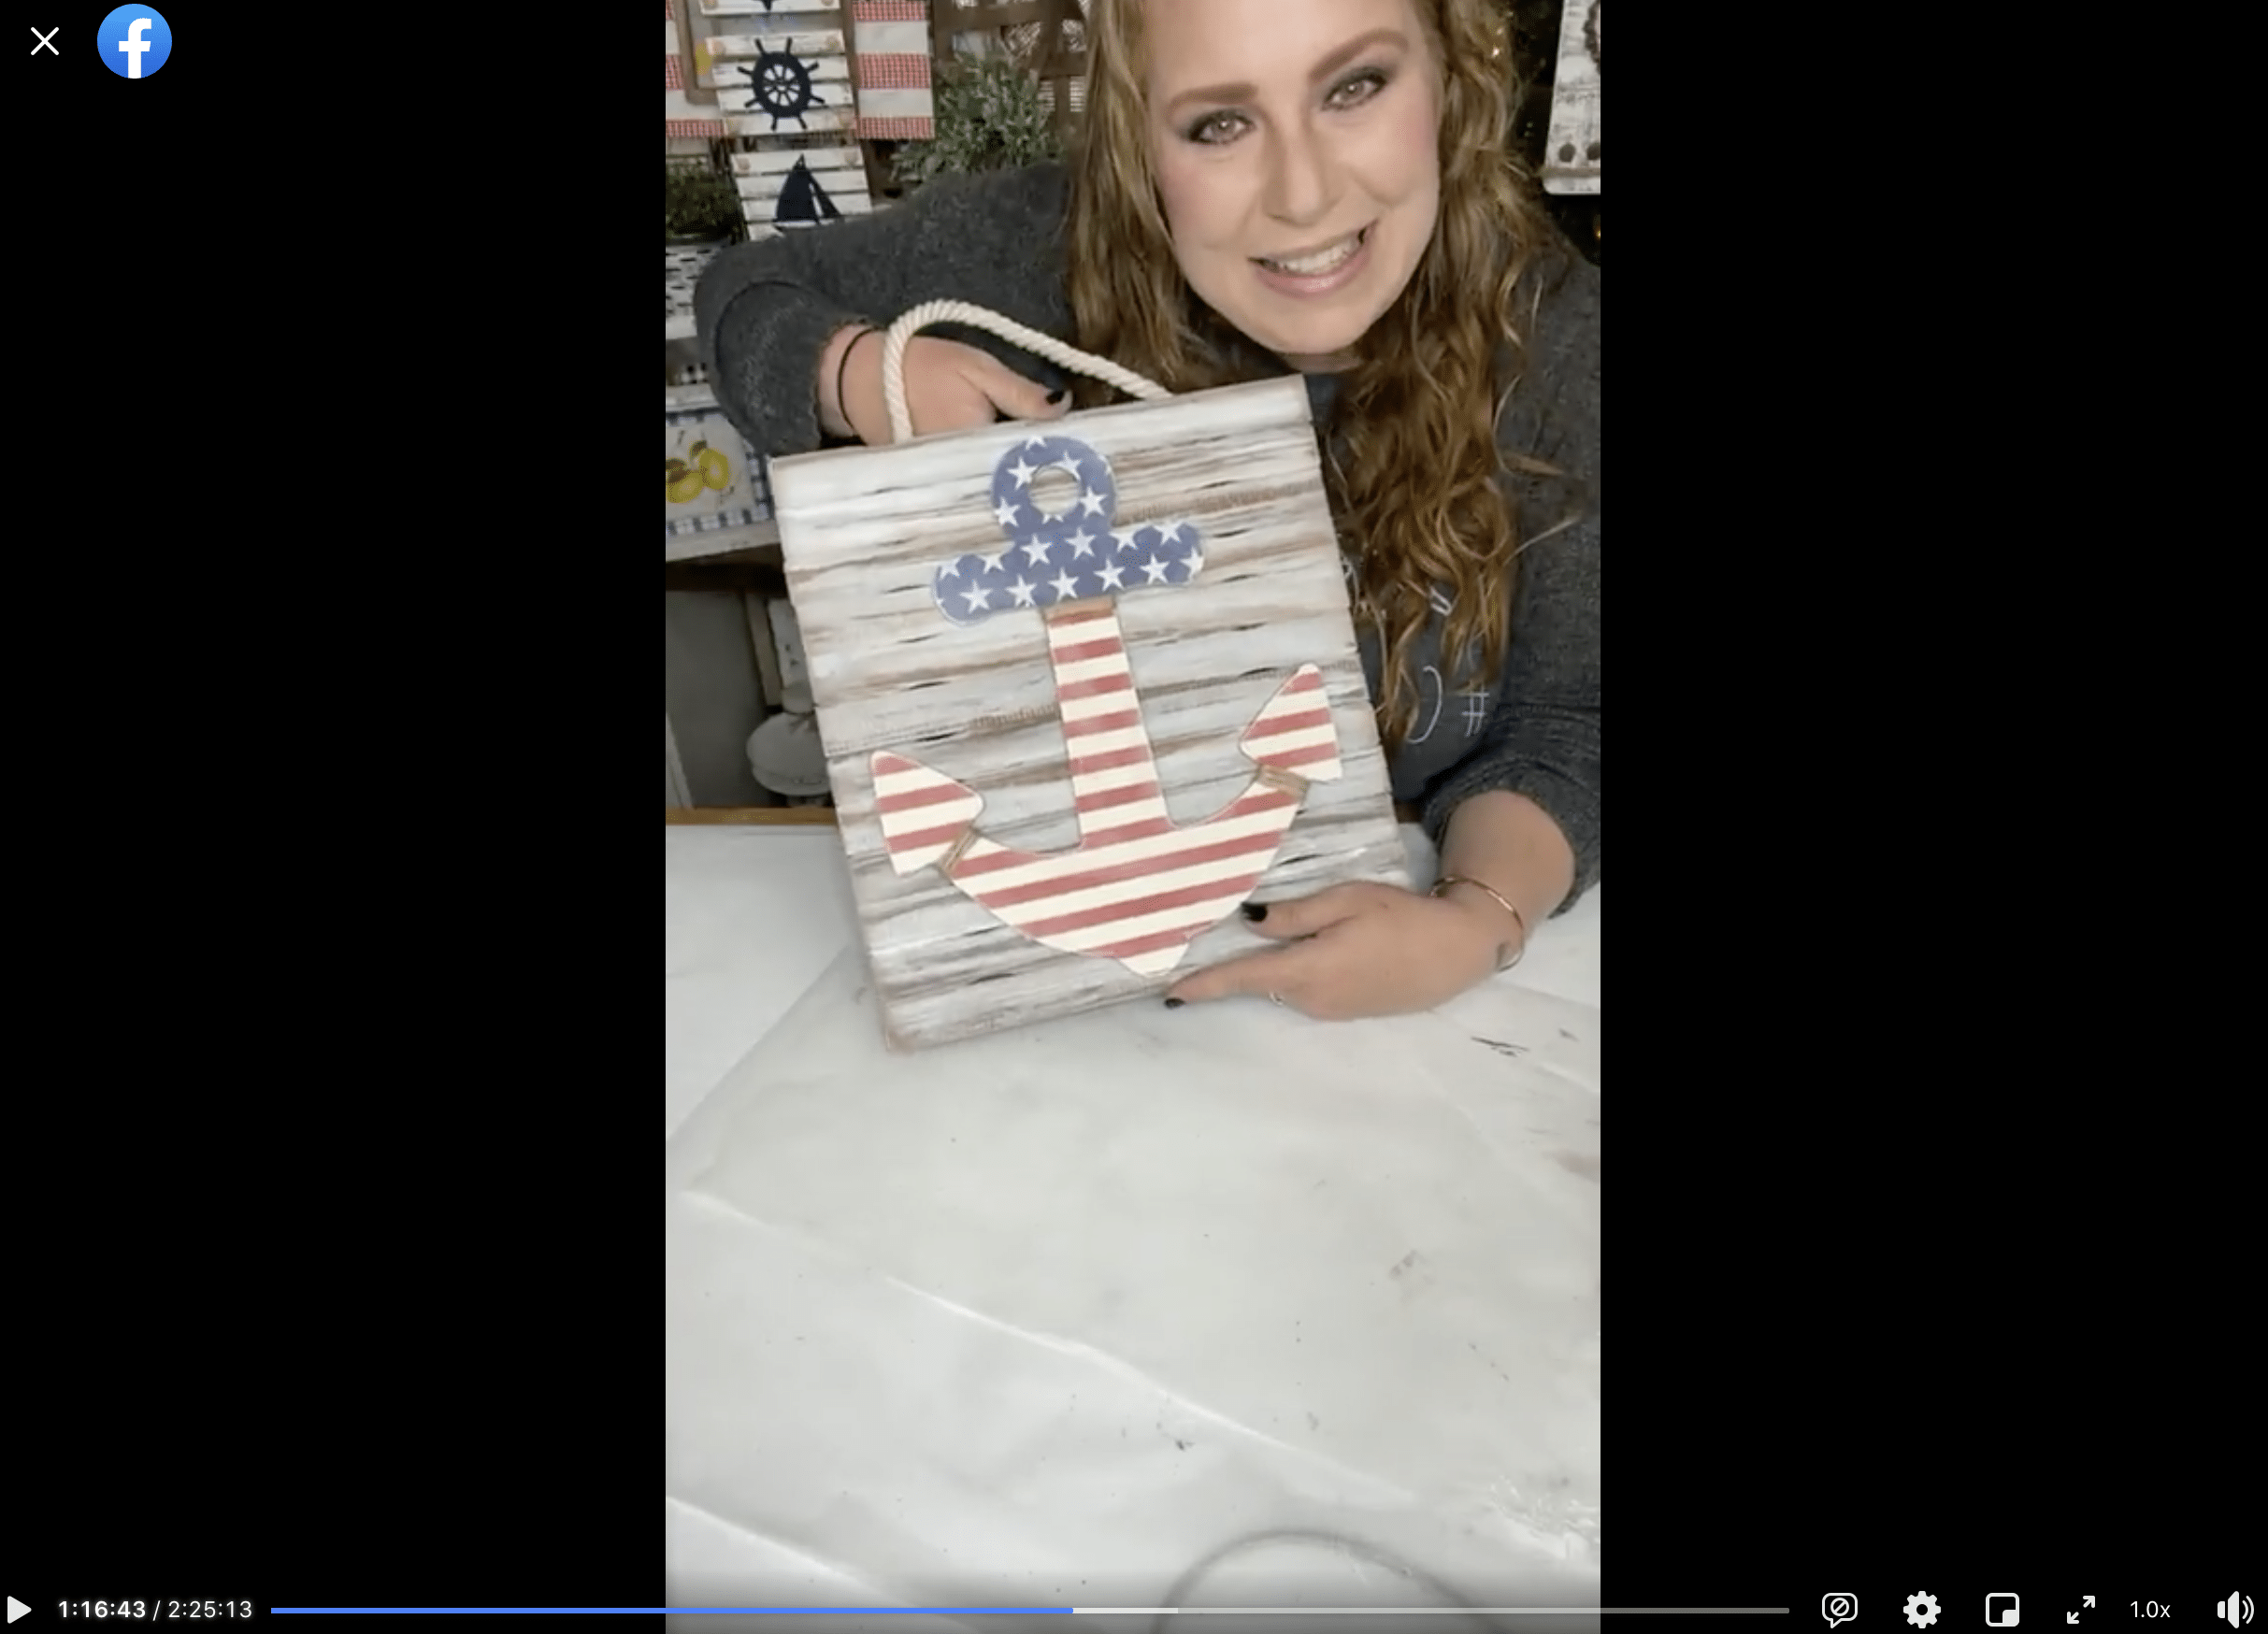 American Flag Anchor DIY Patriotic Decor